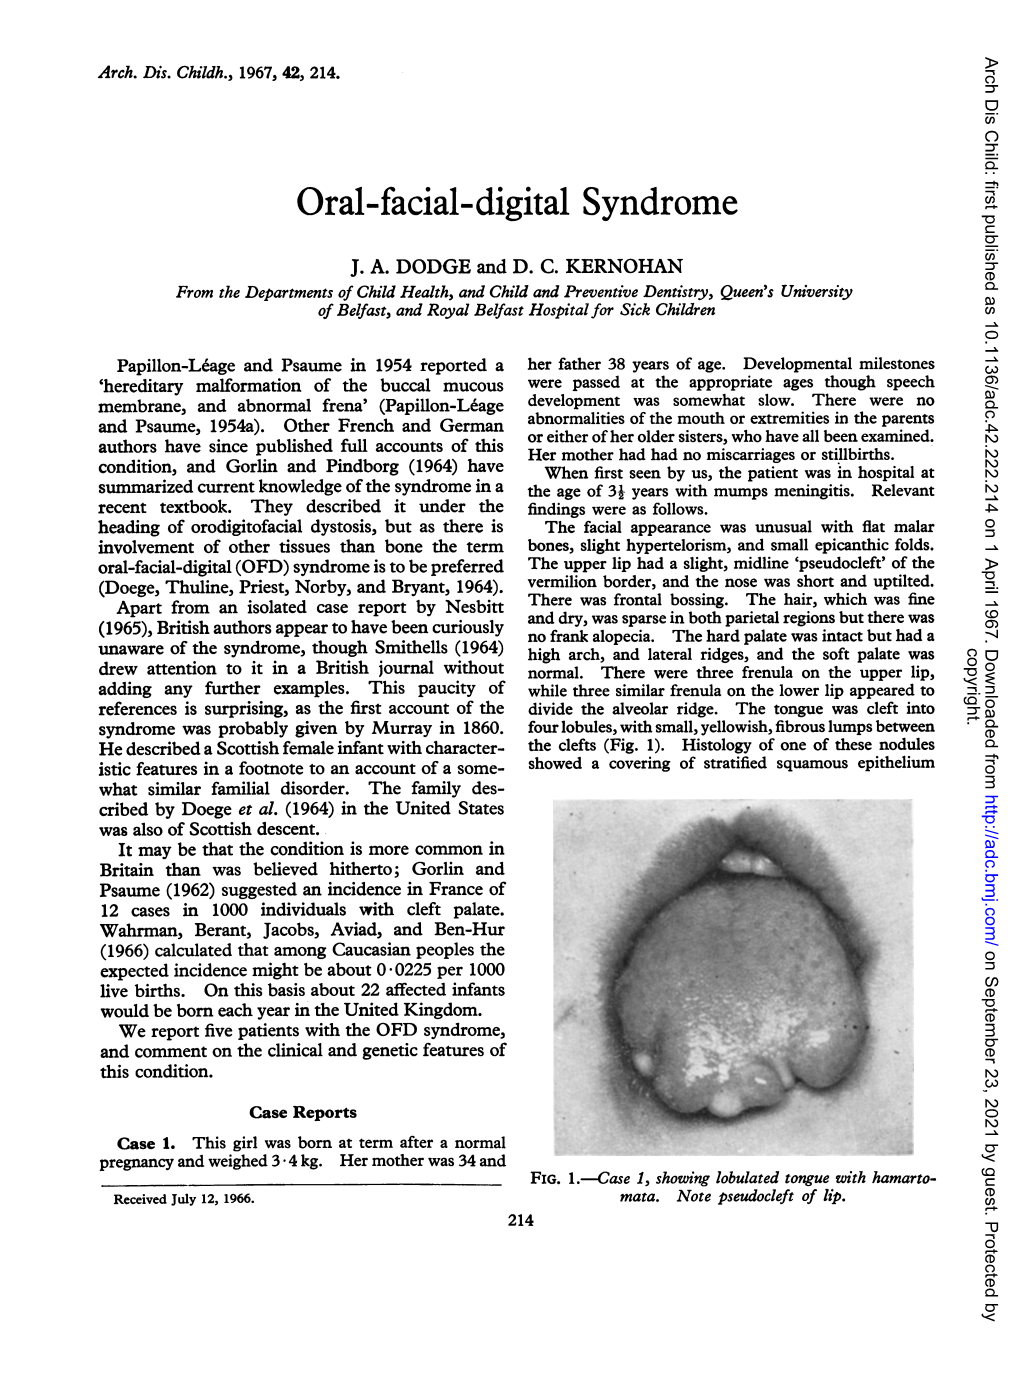 Oral-Facial-Digital Syndrome